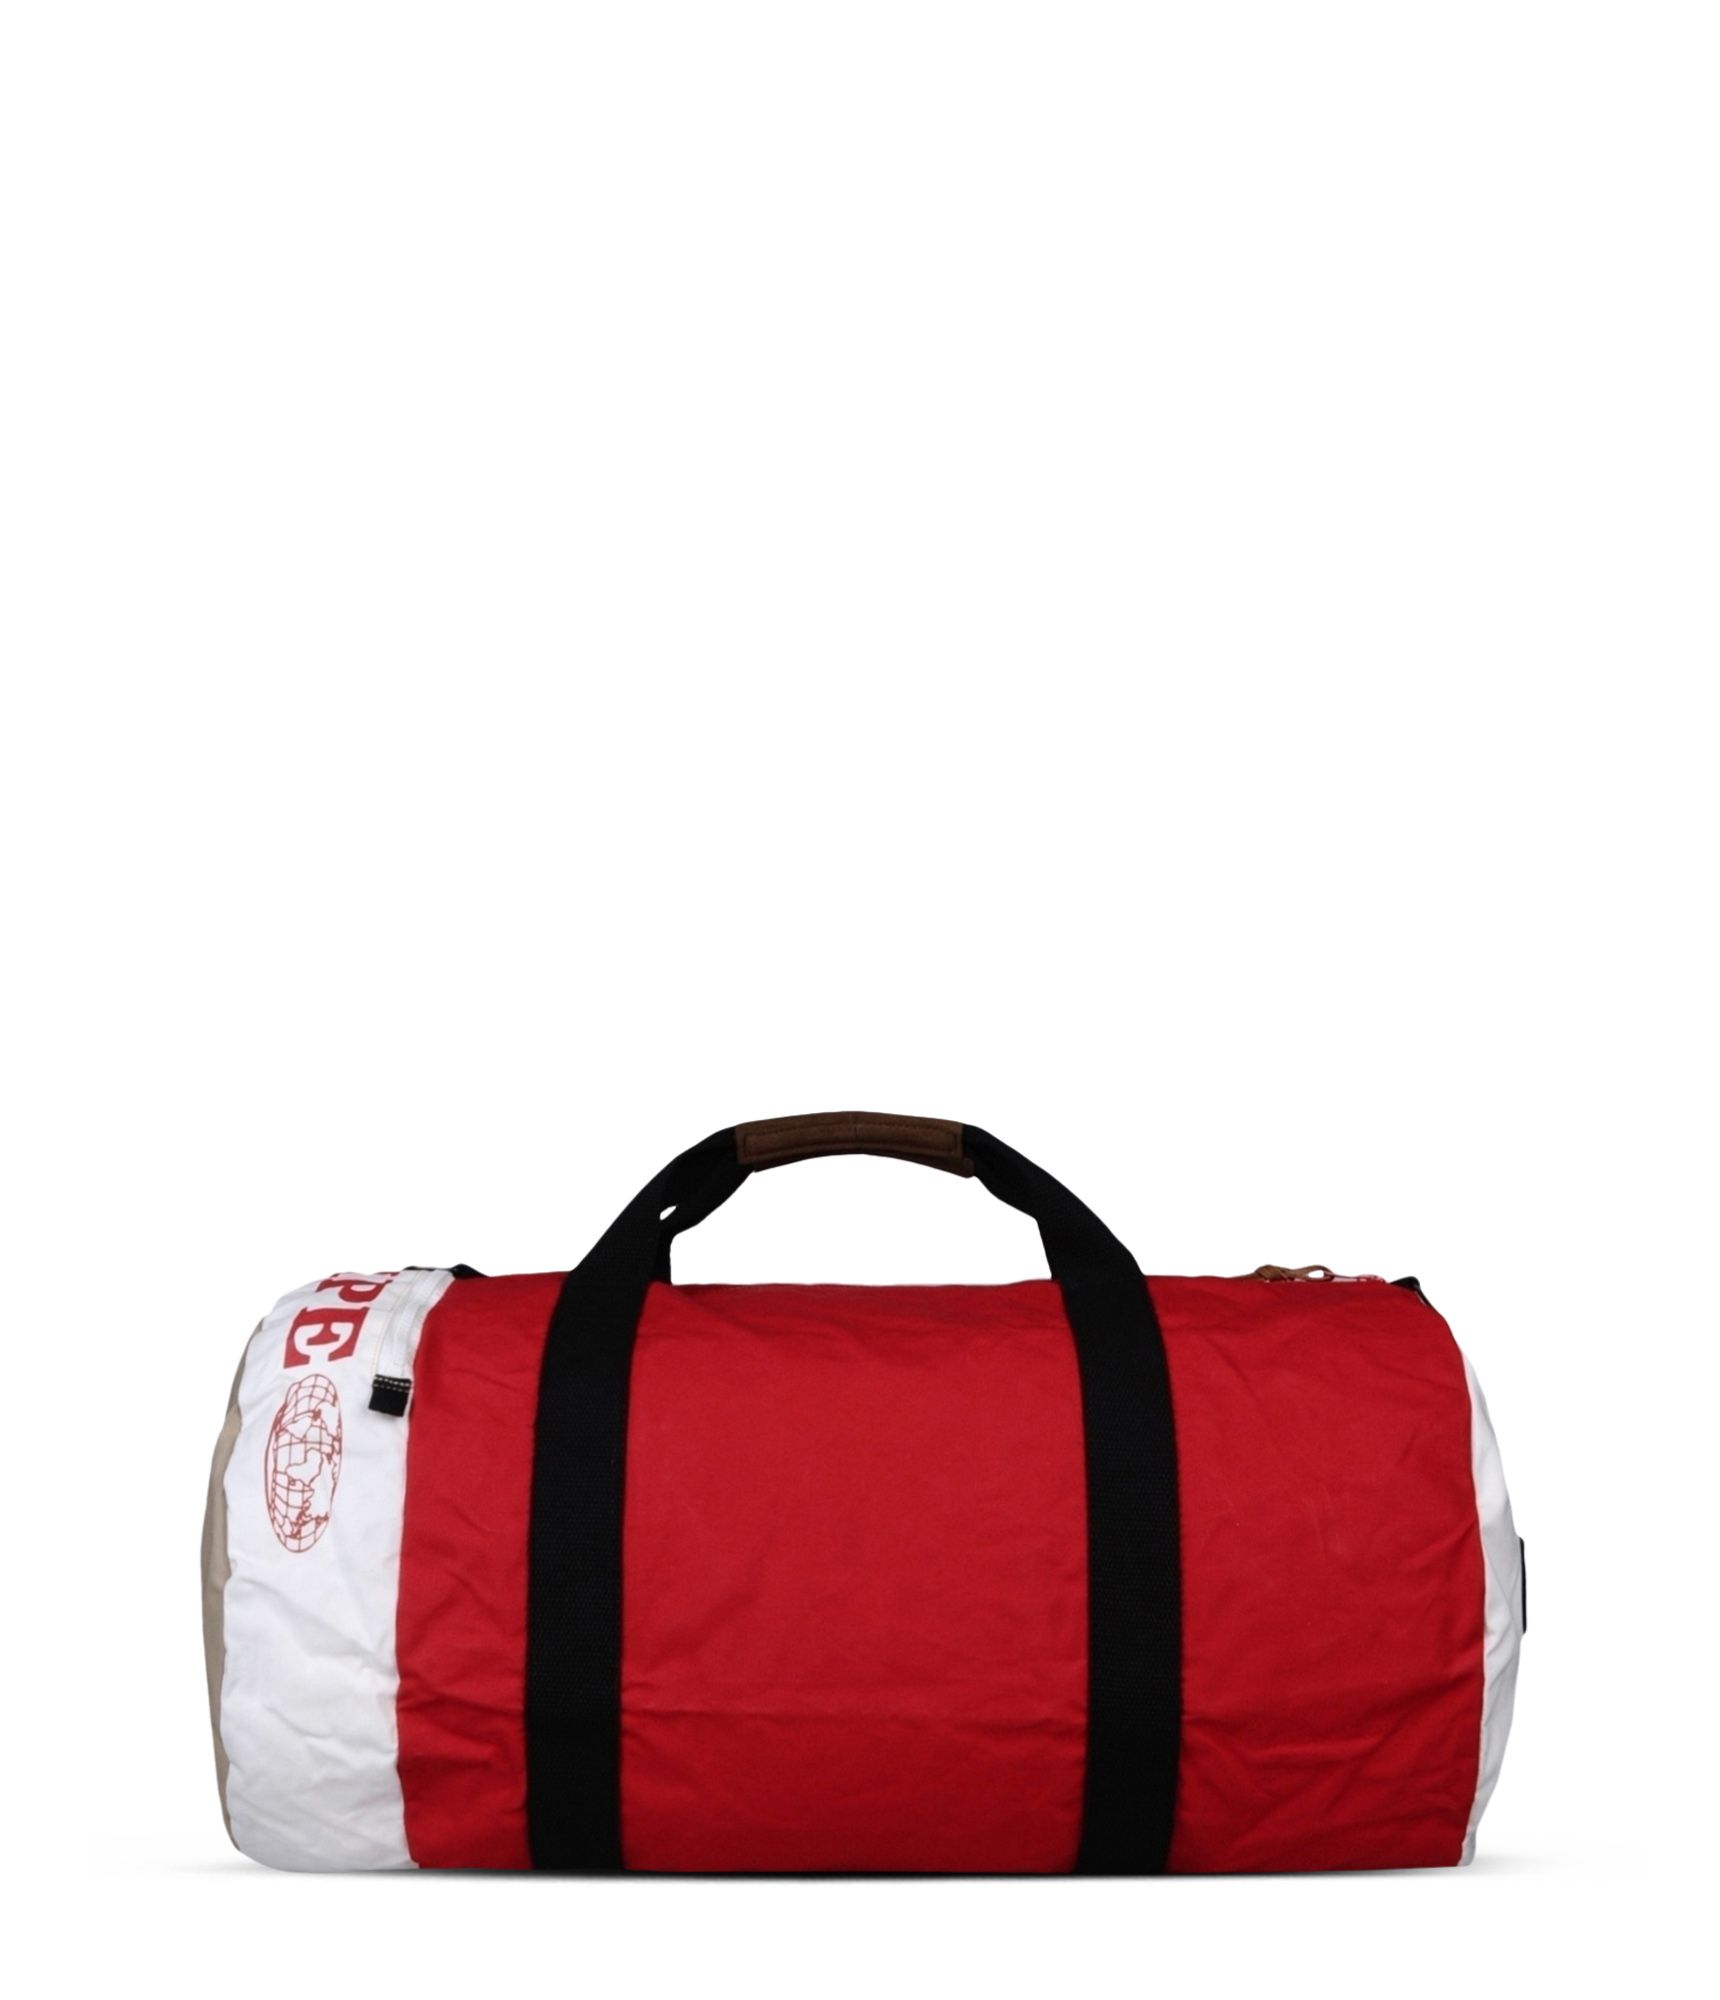 Lyst - Napapijri Duffle Bag in Red for Men